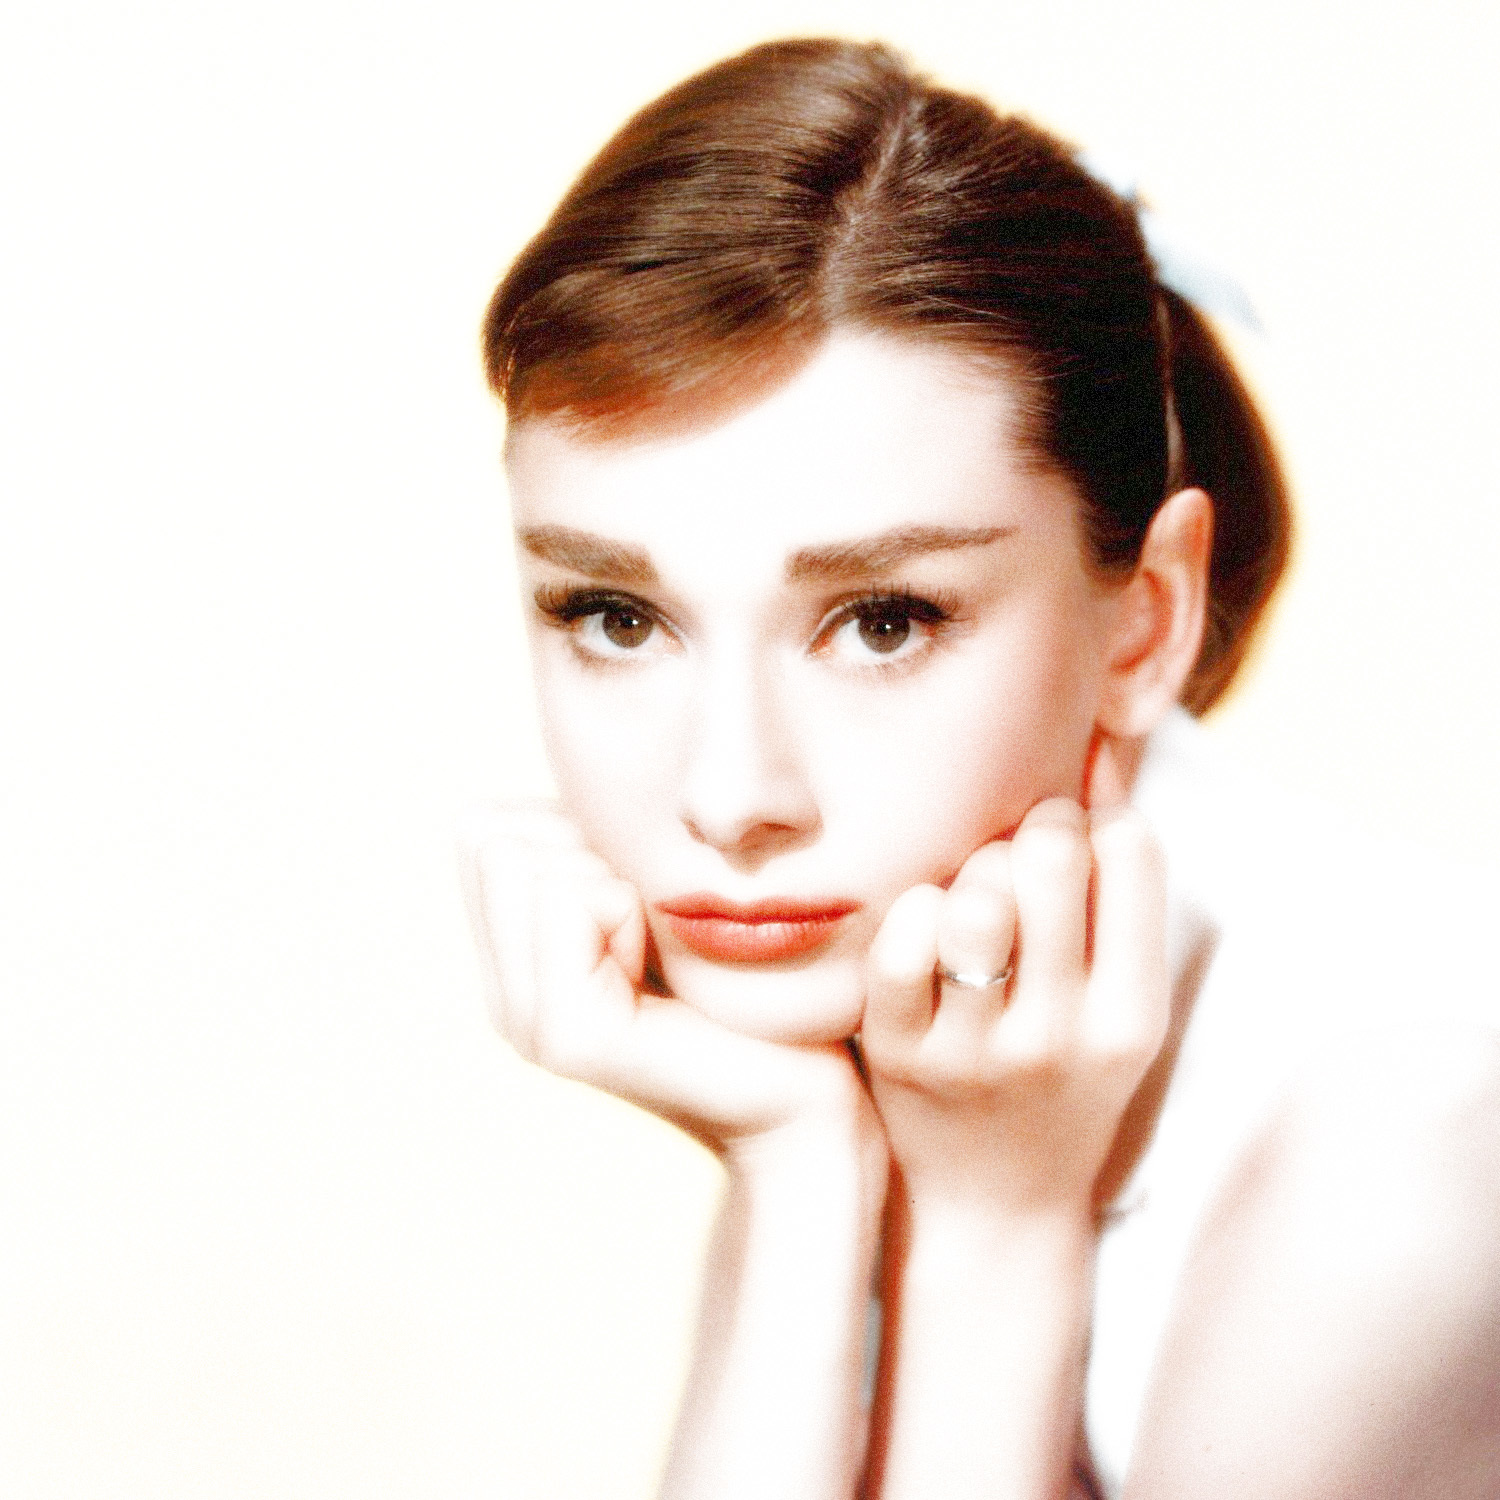 オードリー・ヘップバーン（Audrey Hepburn）・・・美女落ち穂拾い190504_e0042361_12015019.jpg